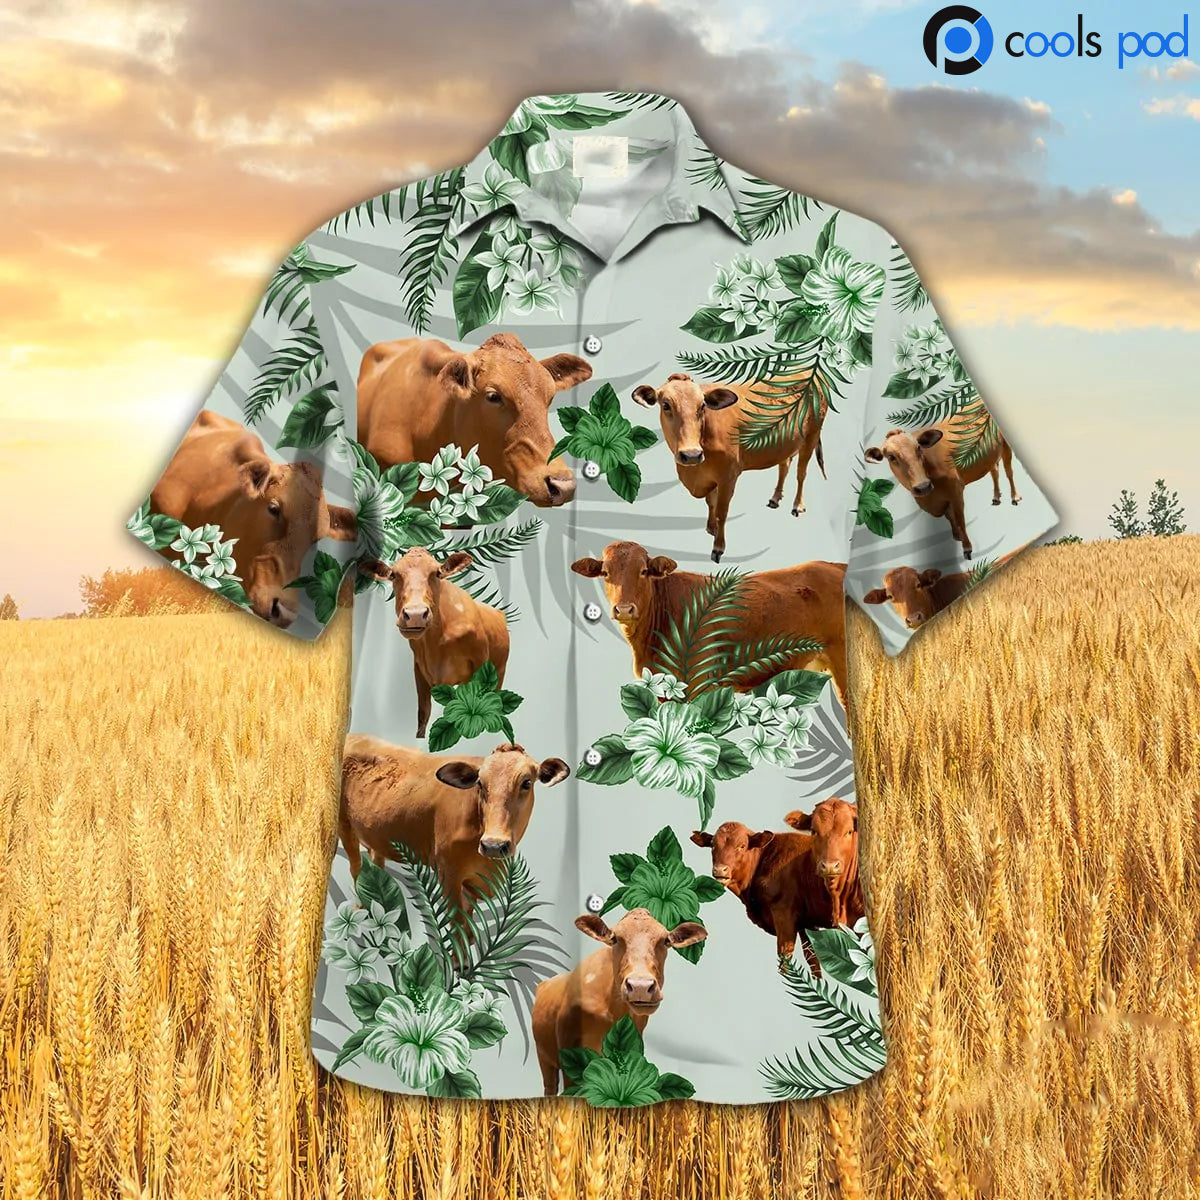 Beefmaster Hibiscus Hawaiian Shirt/ Cool Cow Hawaii Shirt/ Best Hawaiian Shirts For Him Her